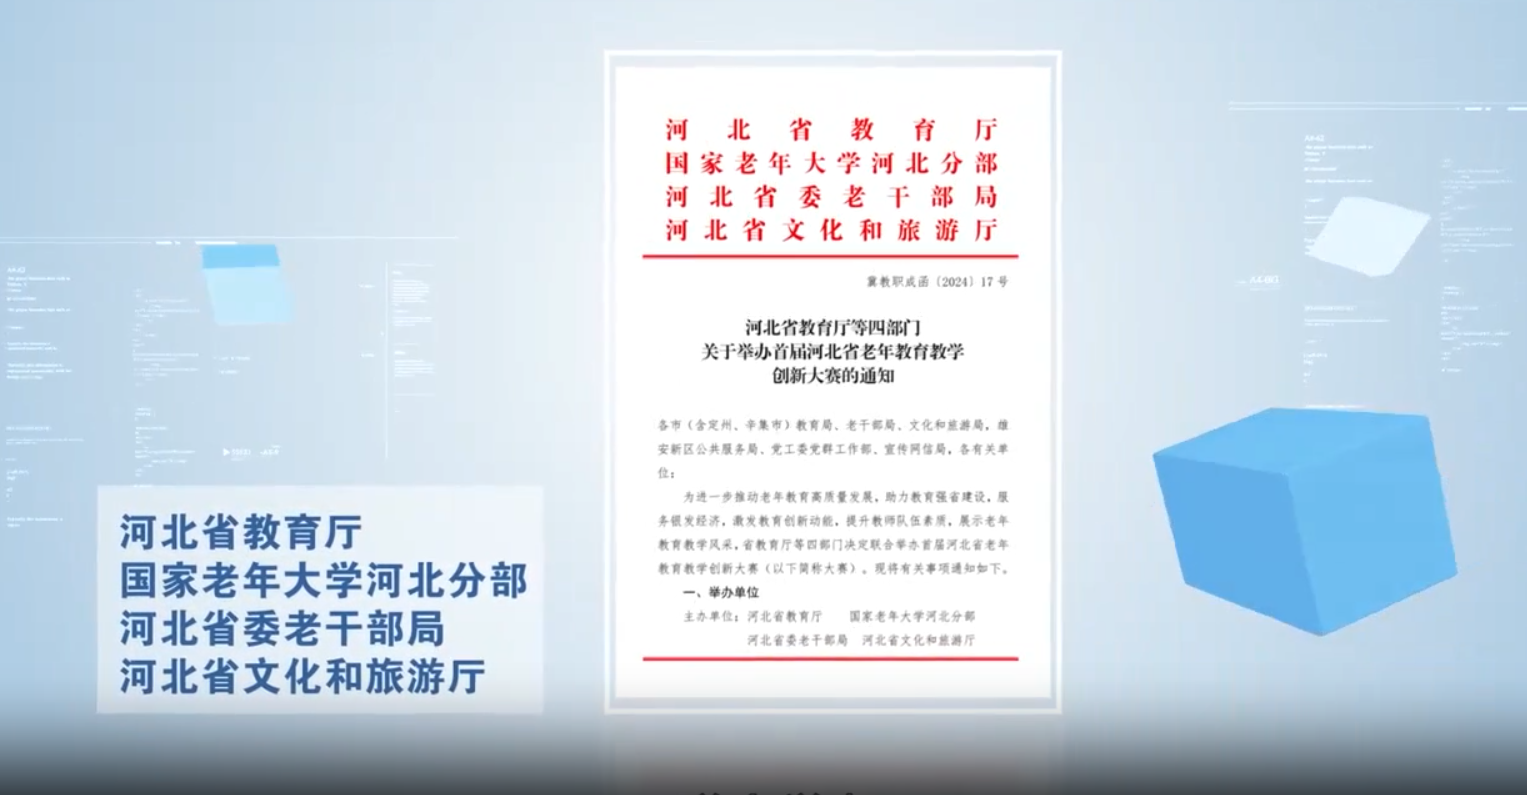 【河北新闻网】河北省首届老年教育教学创新大赛正式开幕